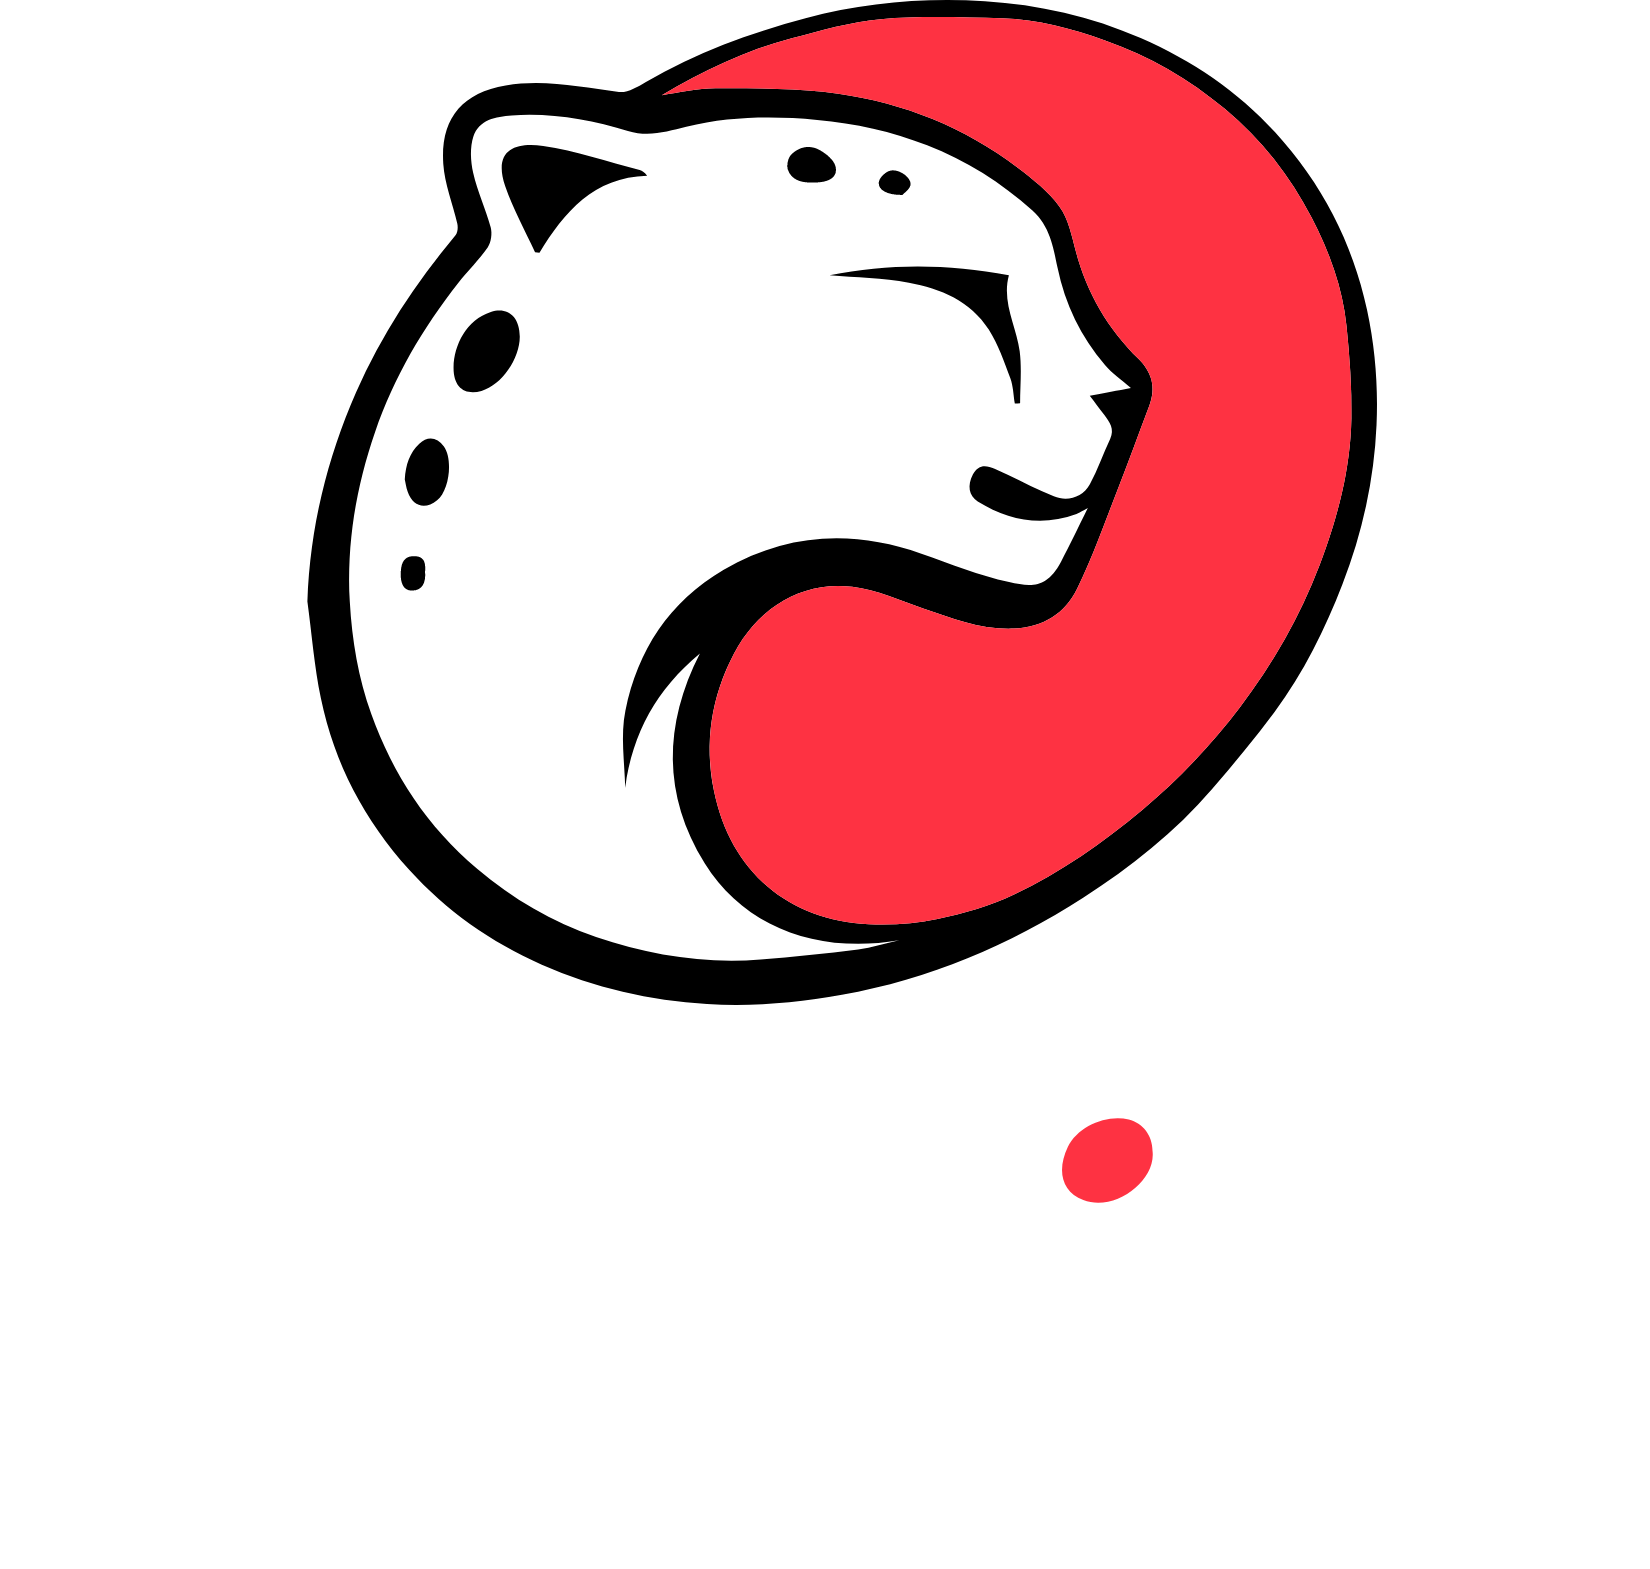 Playtika logo large for dark backgrounds (transparent PNG)